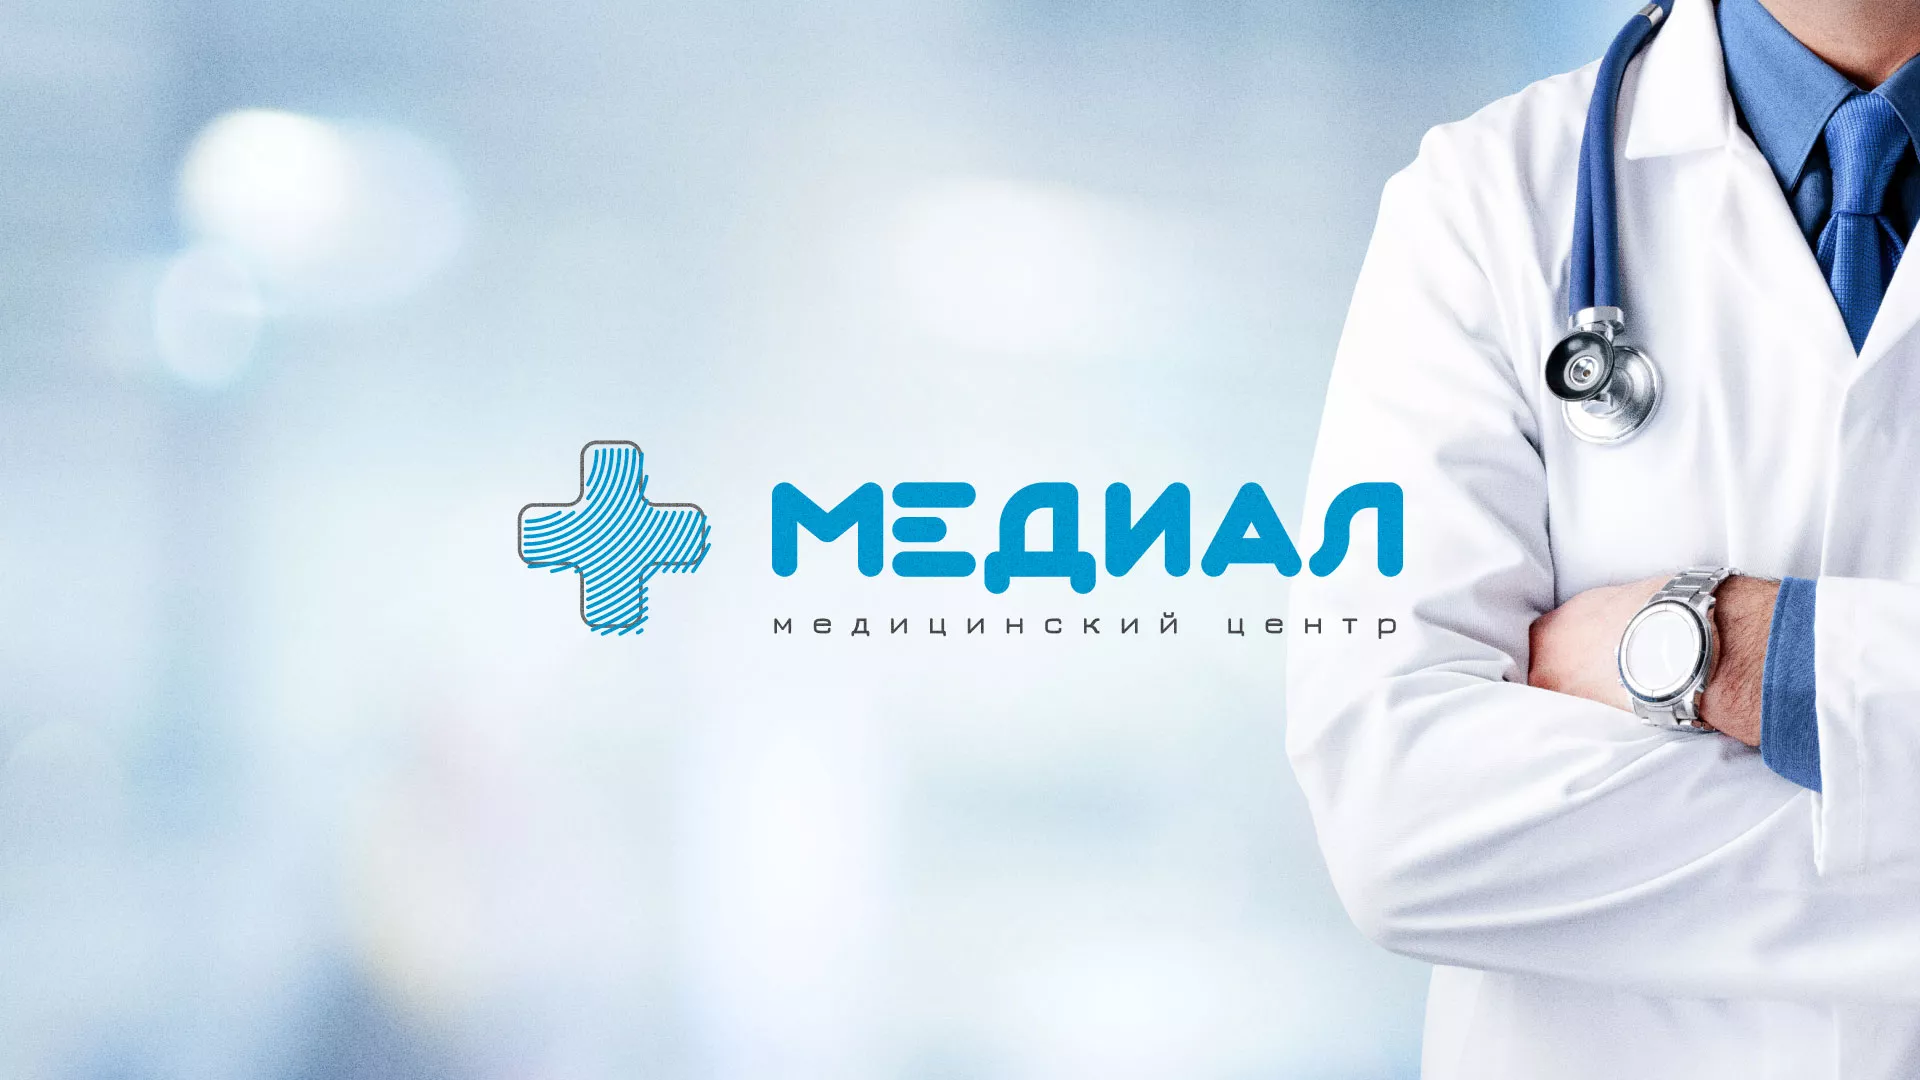 Создание сайта для медицинского центра «Медиал» в Щербинке